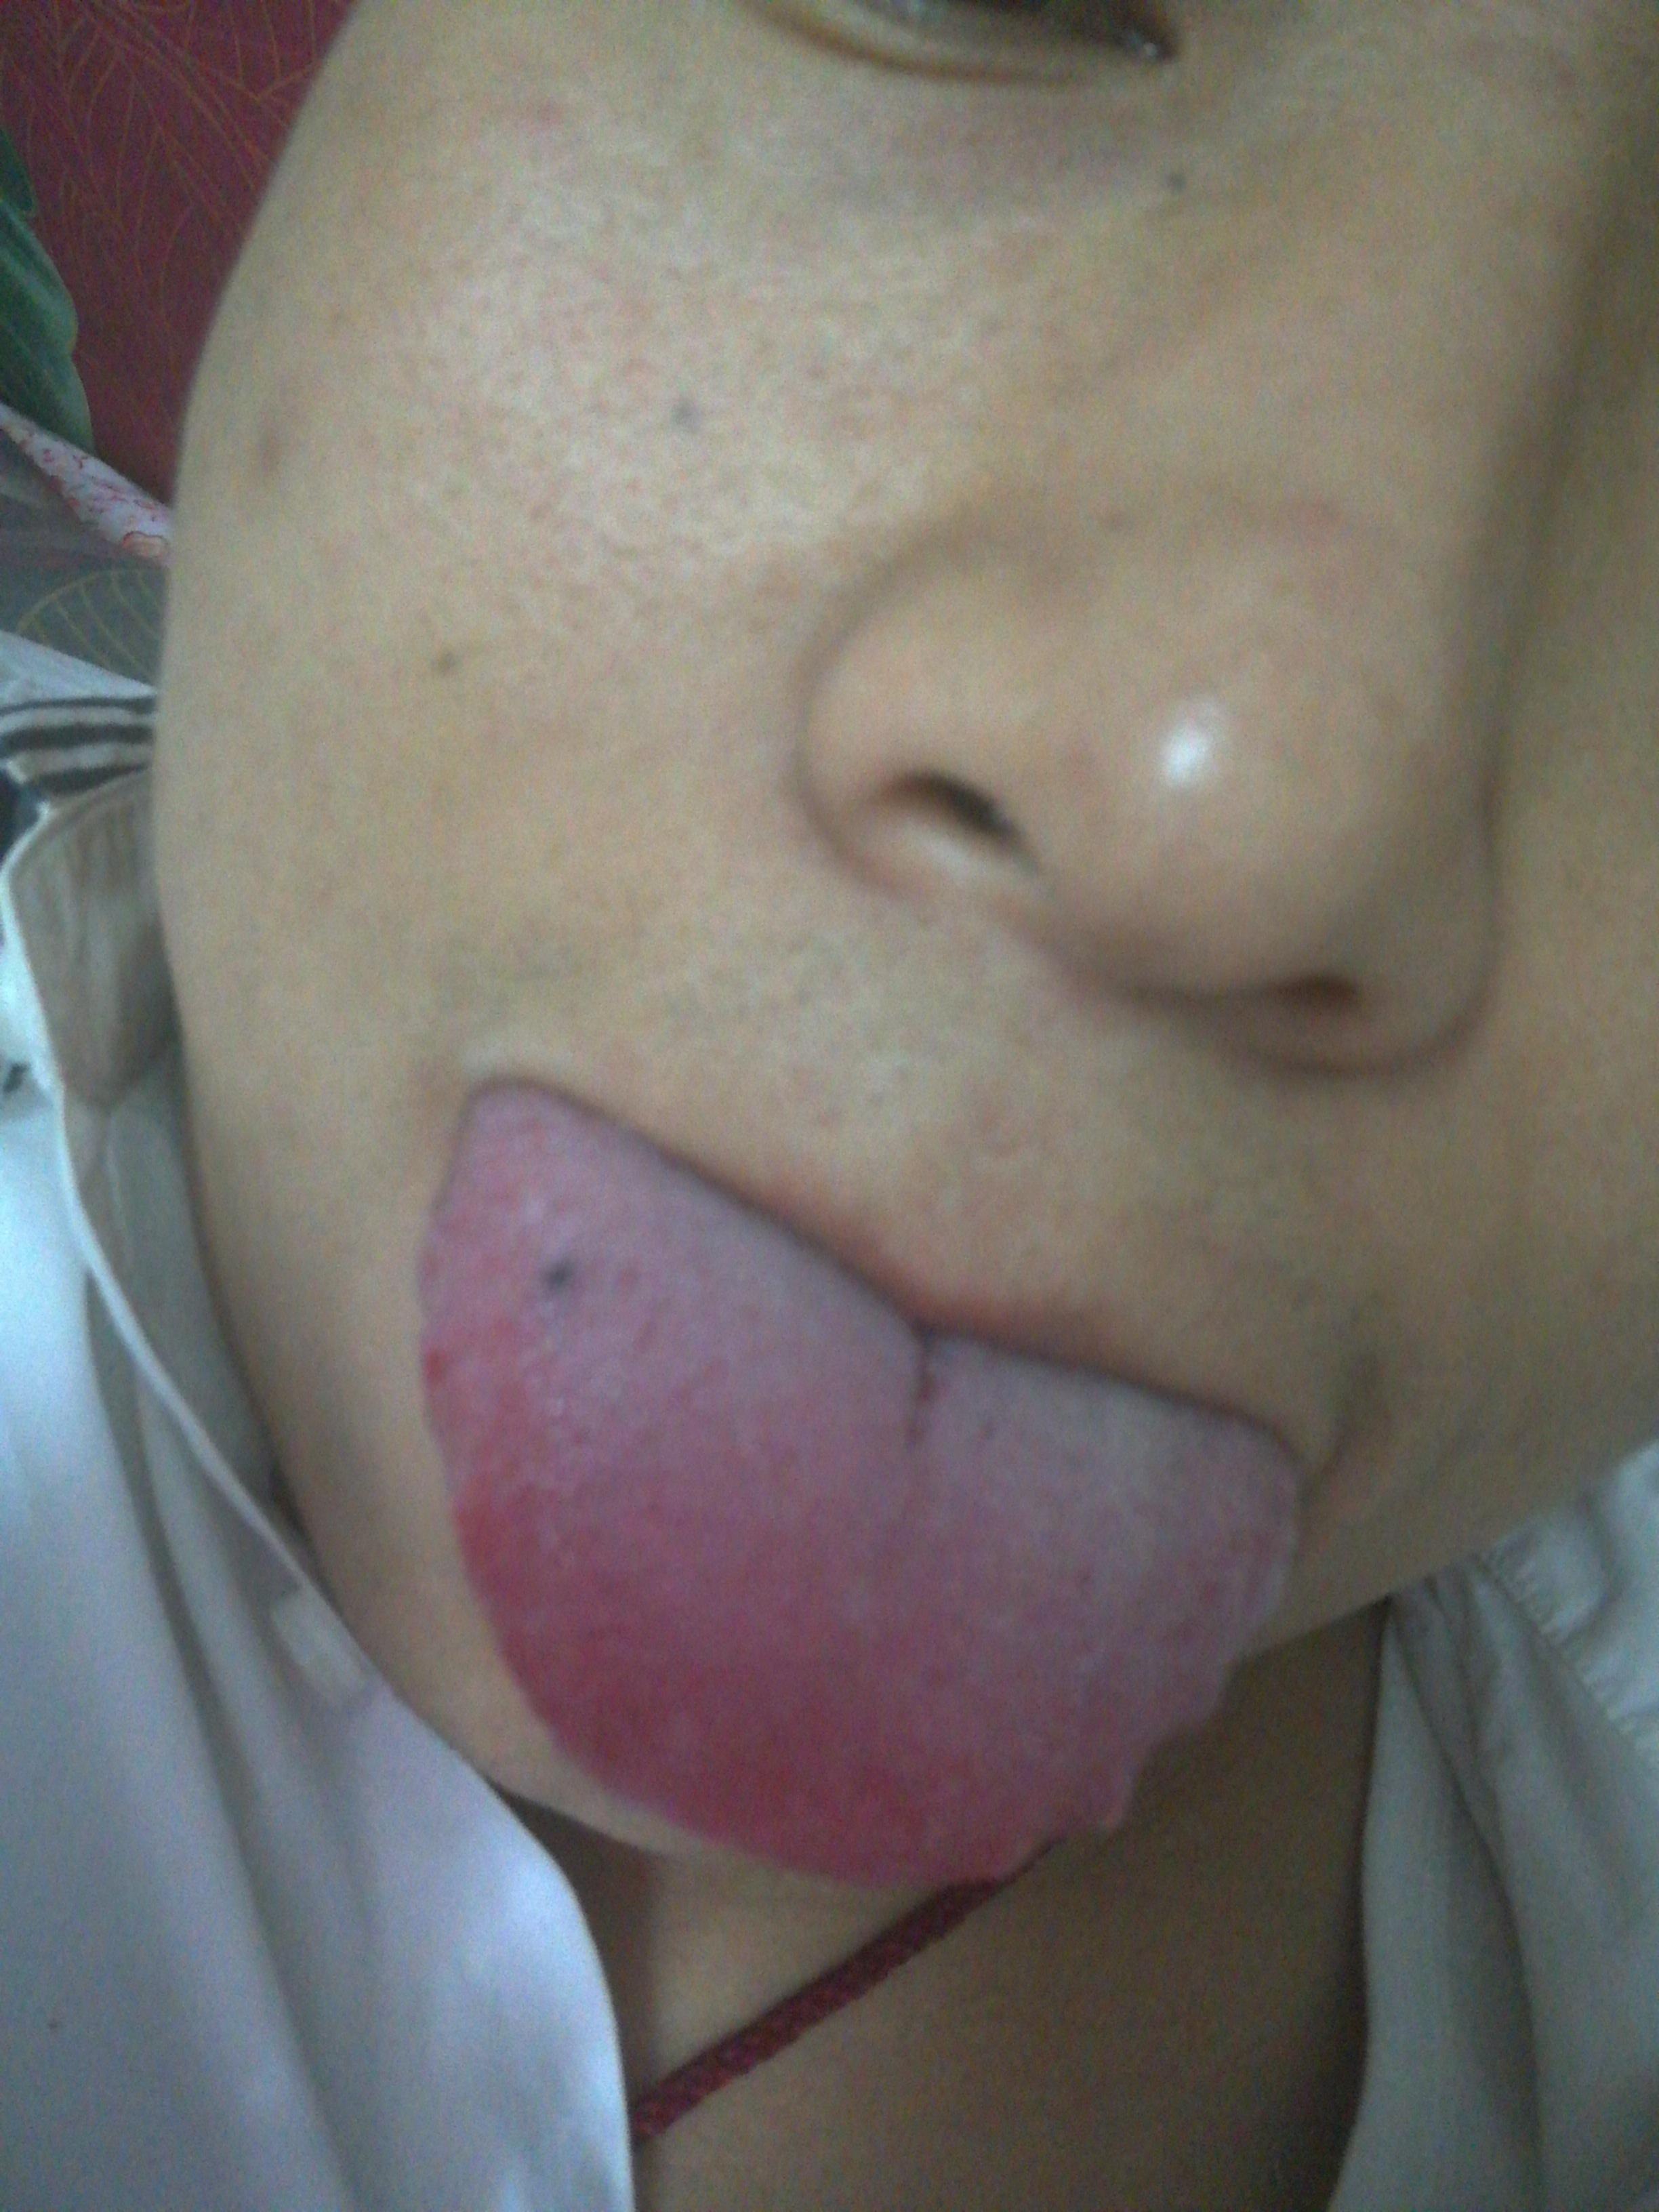 舌头上长黑血泡是癌症图片